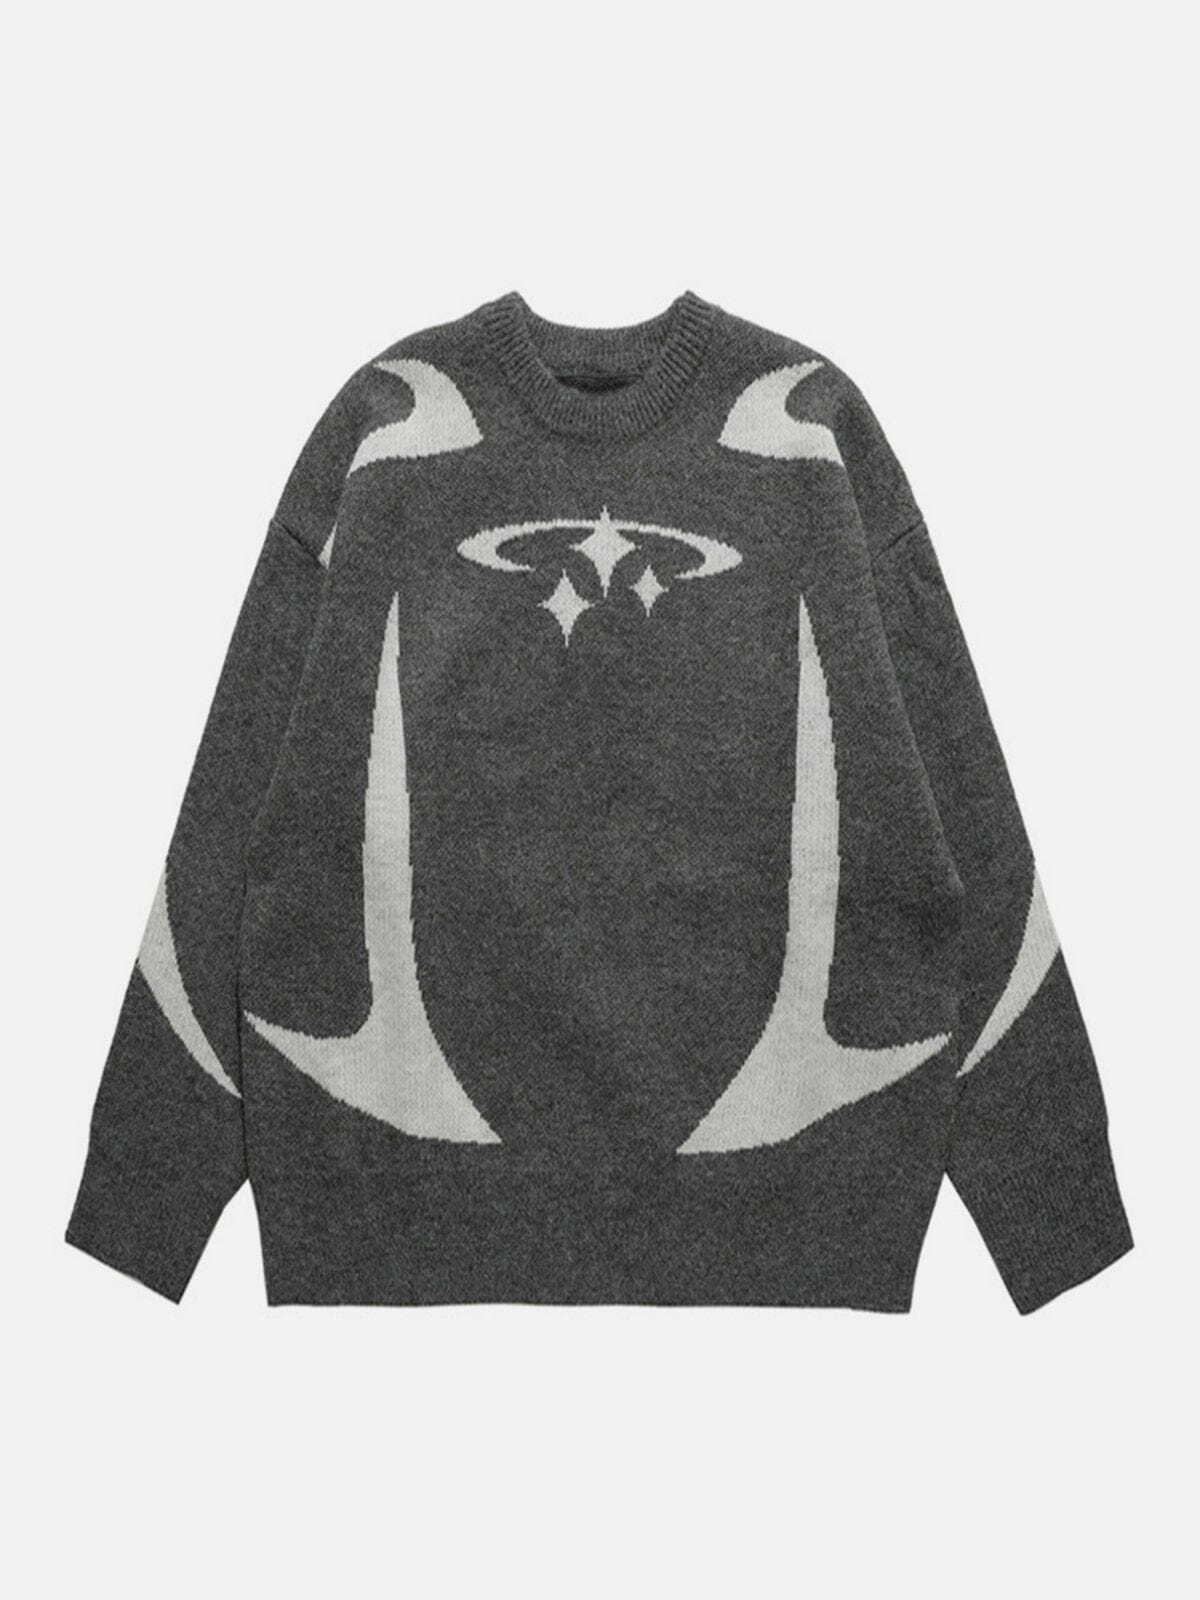 star pattern sweater retro knitwear charm 2627